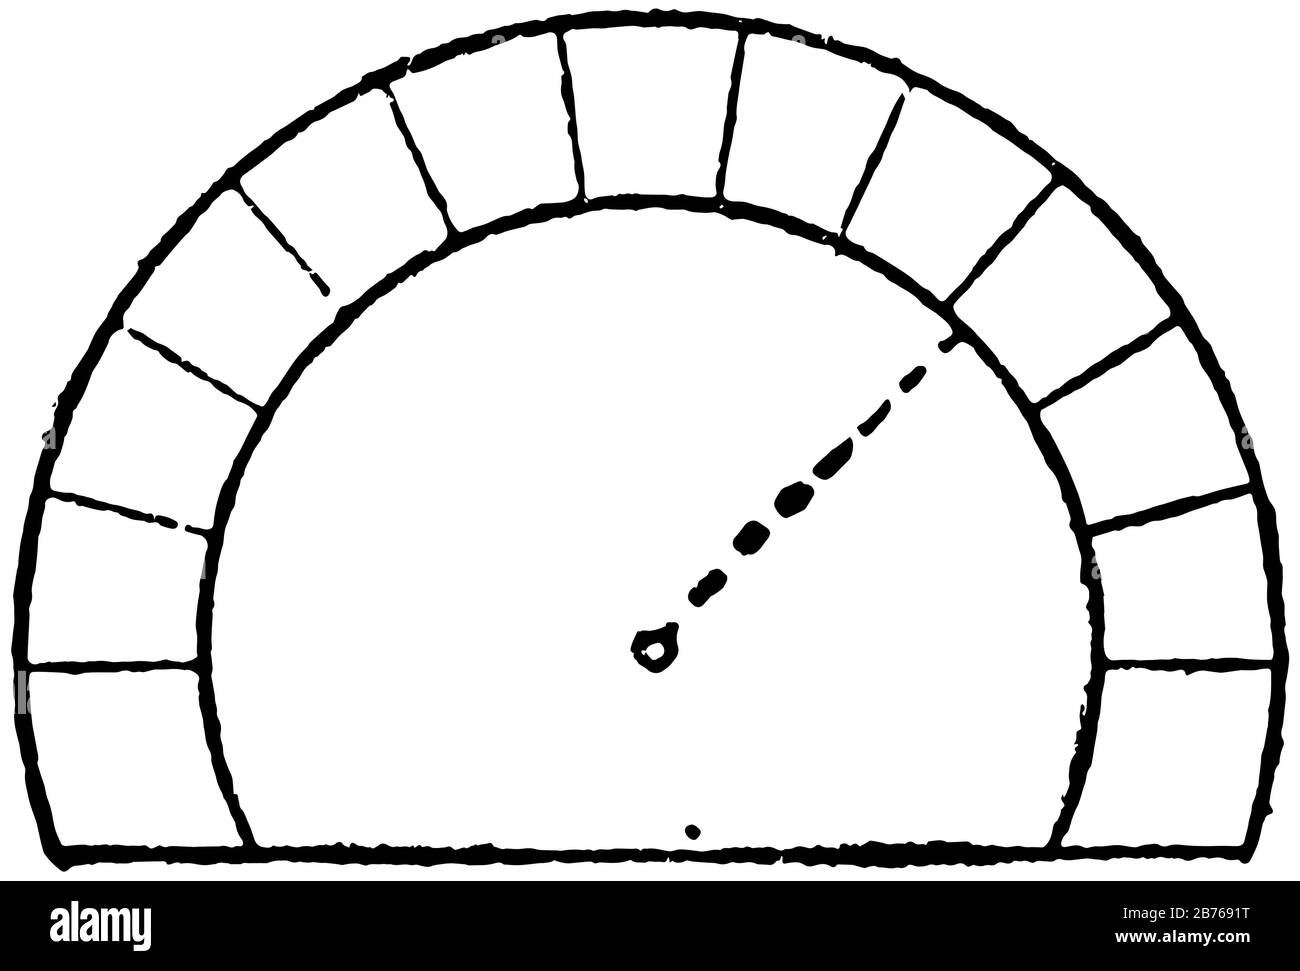 Hufeisenbogen, das Zentrum über dem springenden, in maurischer Architektur verwendet, auch als maurischer Bogen, Schlüsselloch-Bogen, Vintage-Linie Kordin bezeichnet Stock Vektor